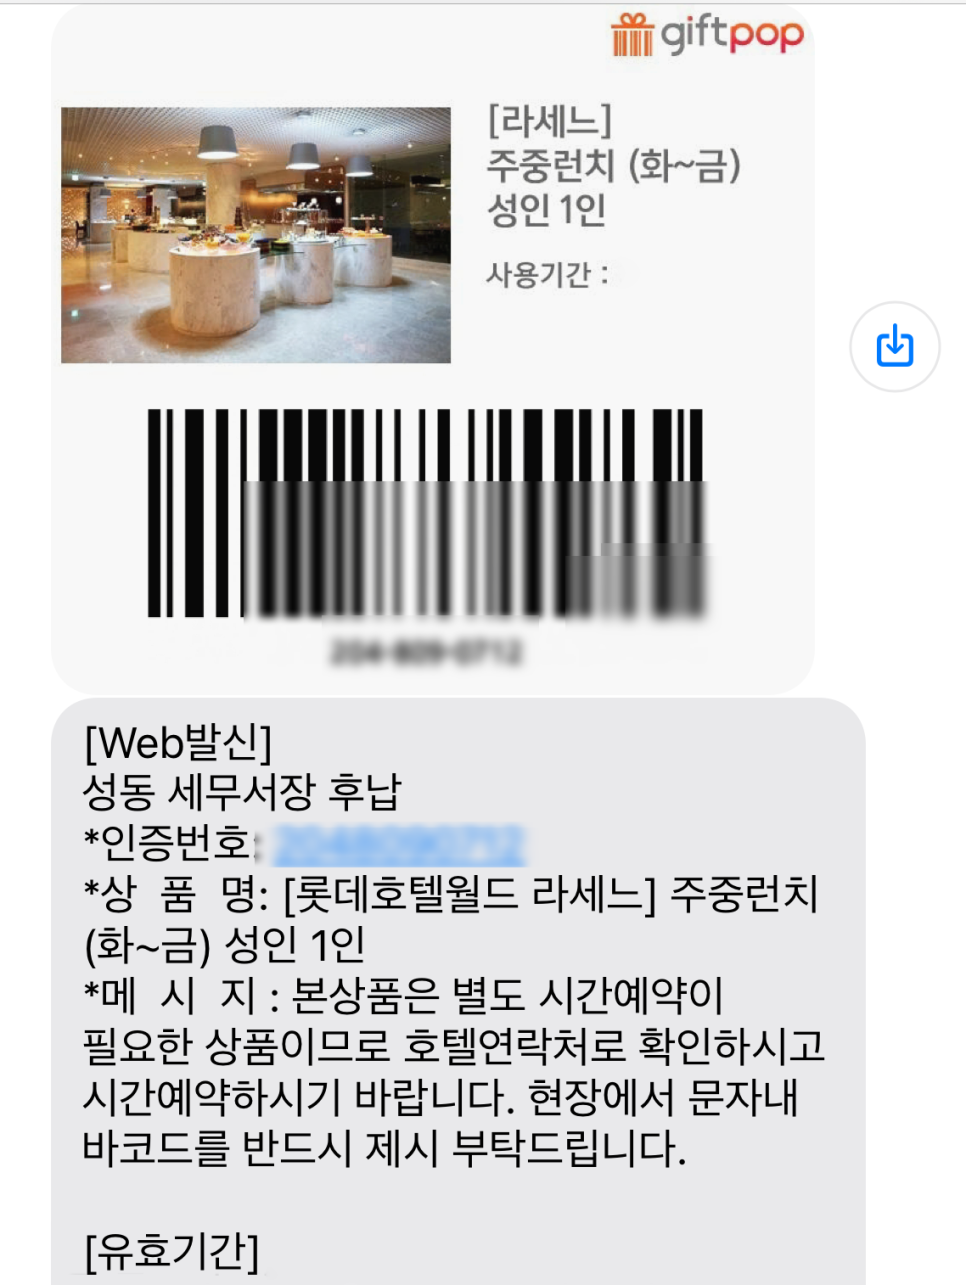 서울 호텔 뷔페 추천 롯데호텔 라세느 할인 예약